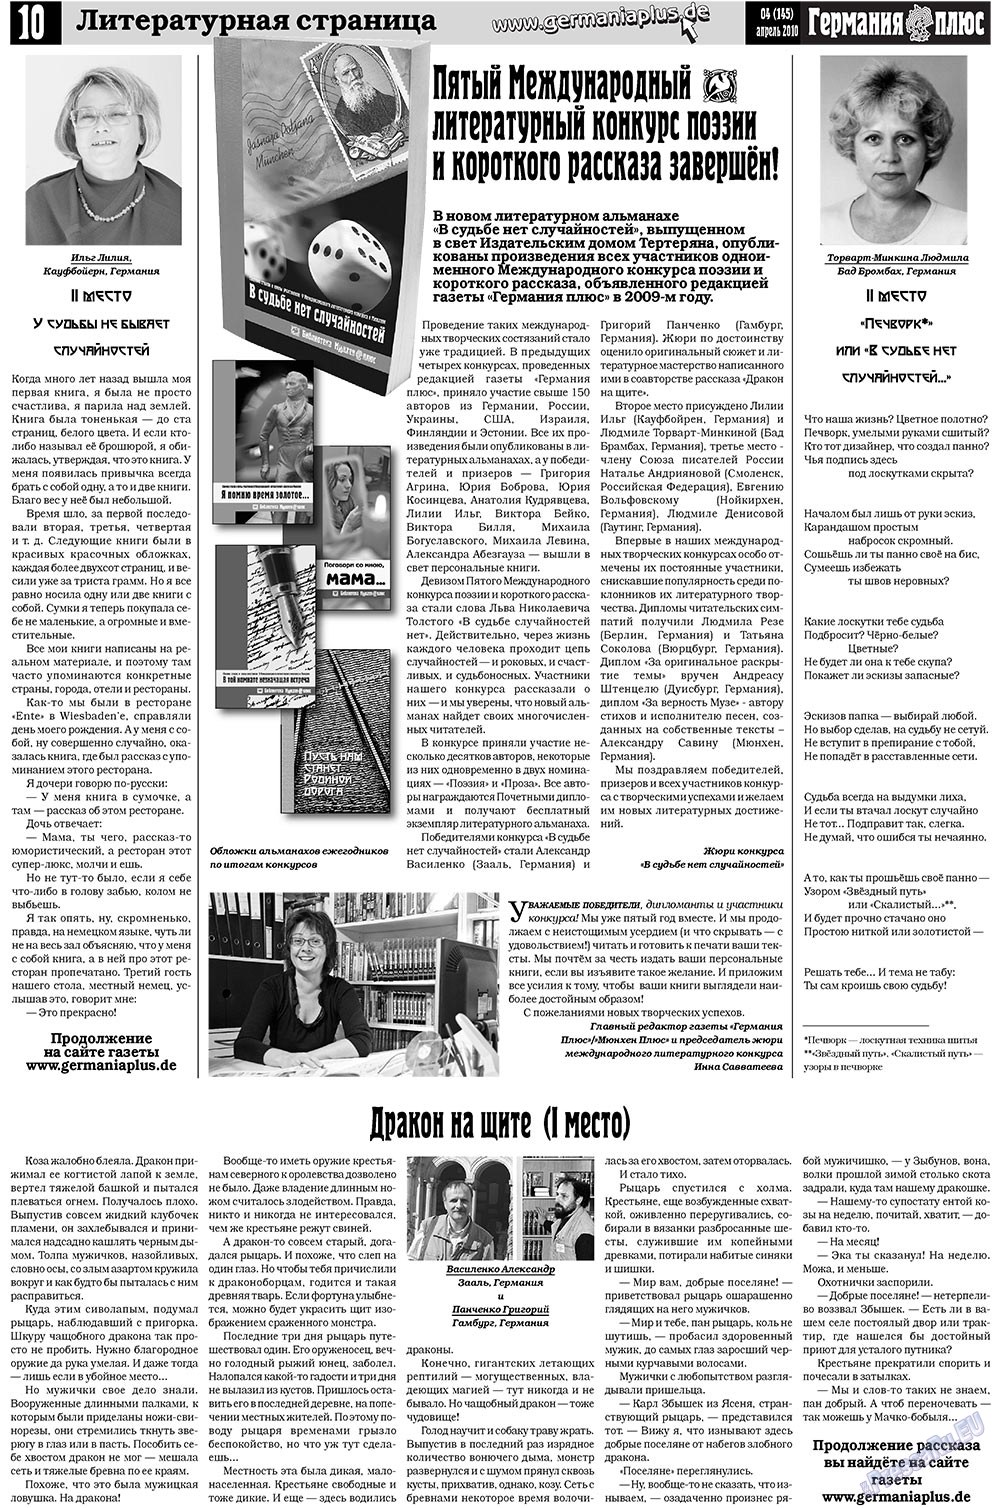 Германия плюс, газета. 2010 №4 стр.10